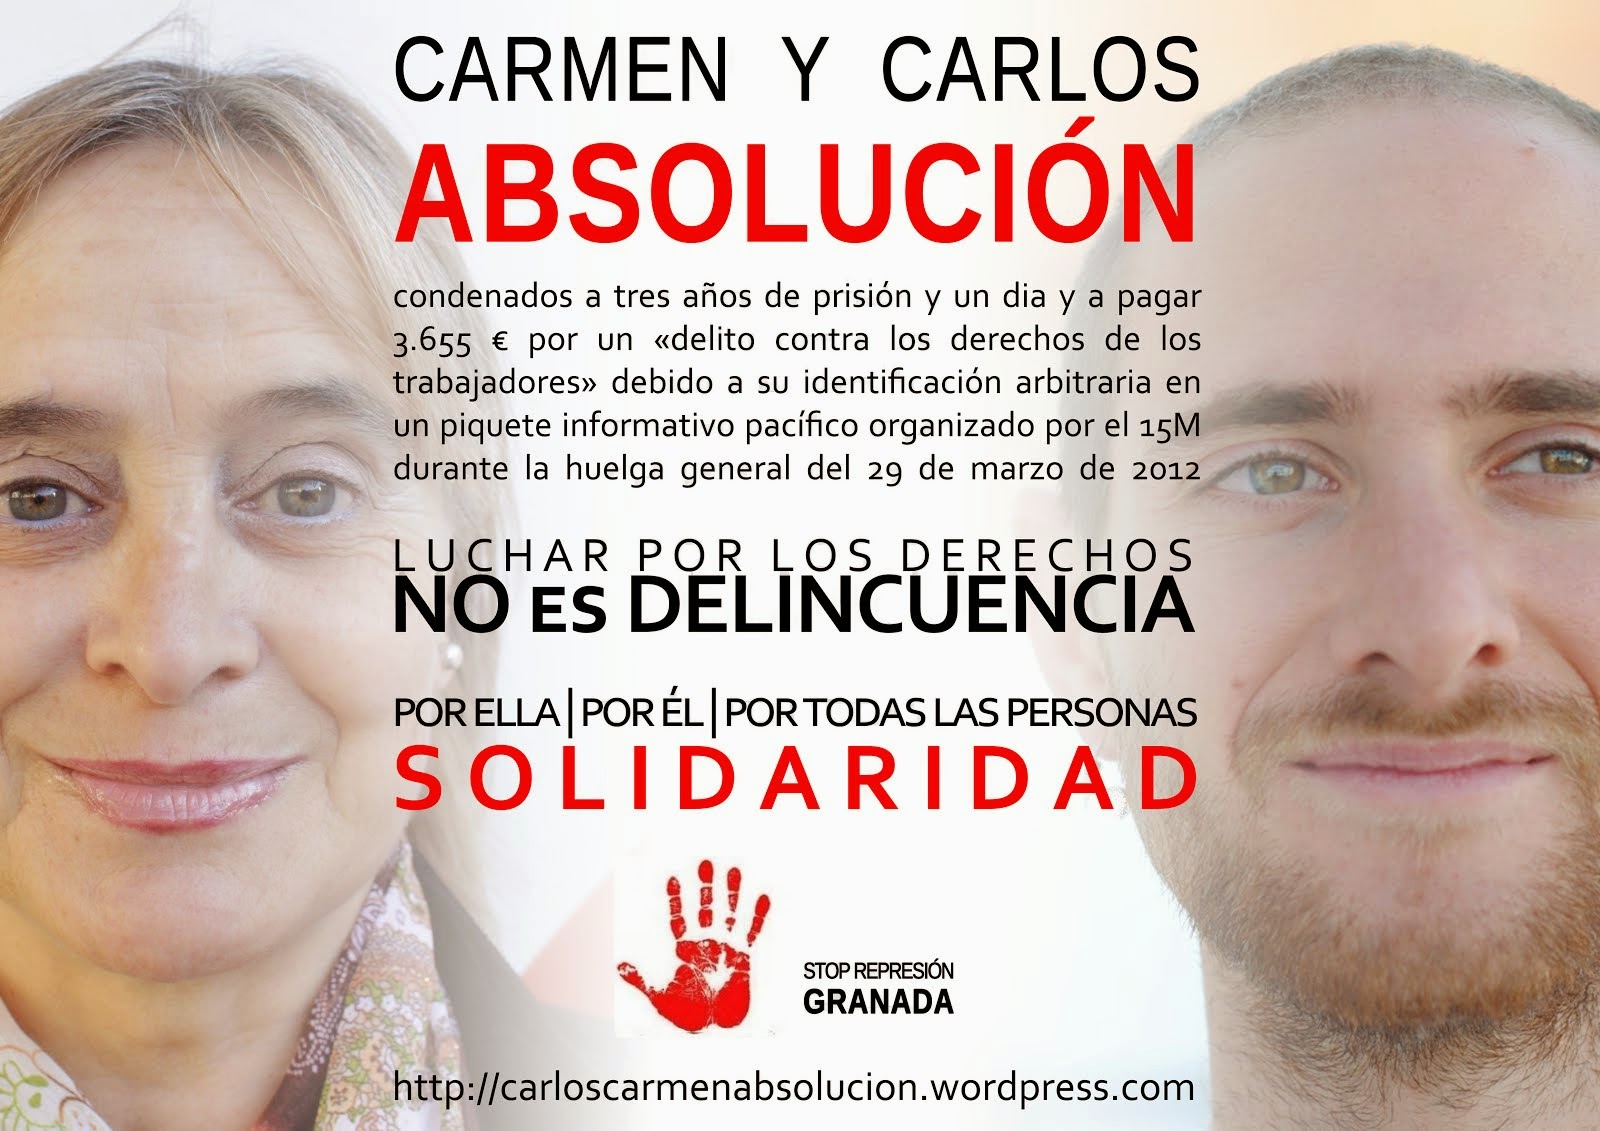 Absolució per a Carmen i Carlos - 3 anys de presó per la vaga del 29M